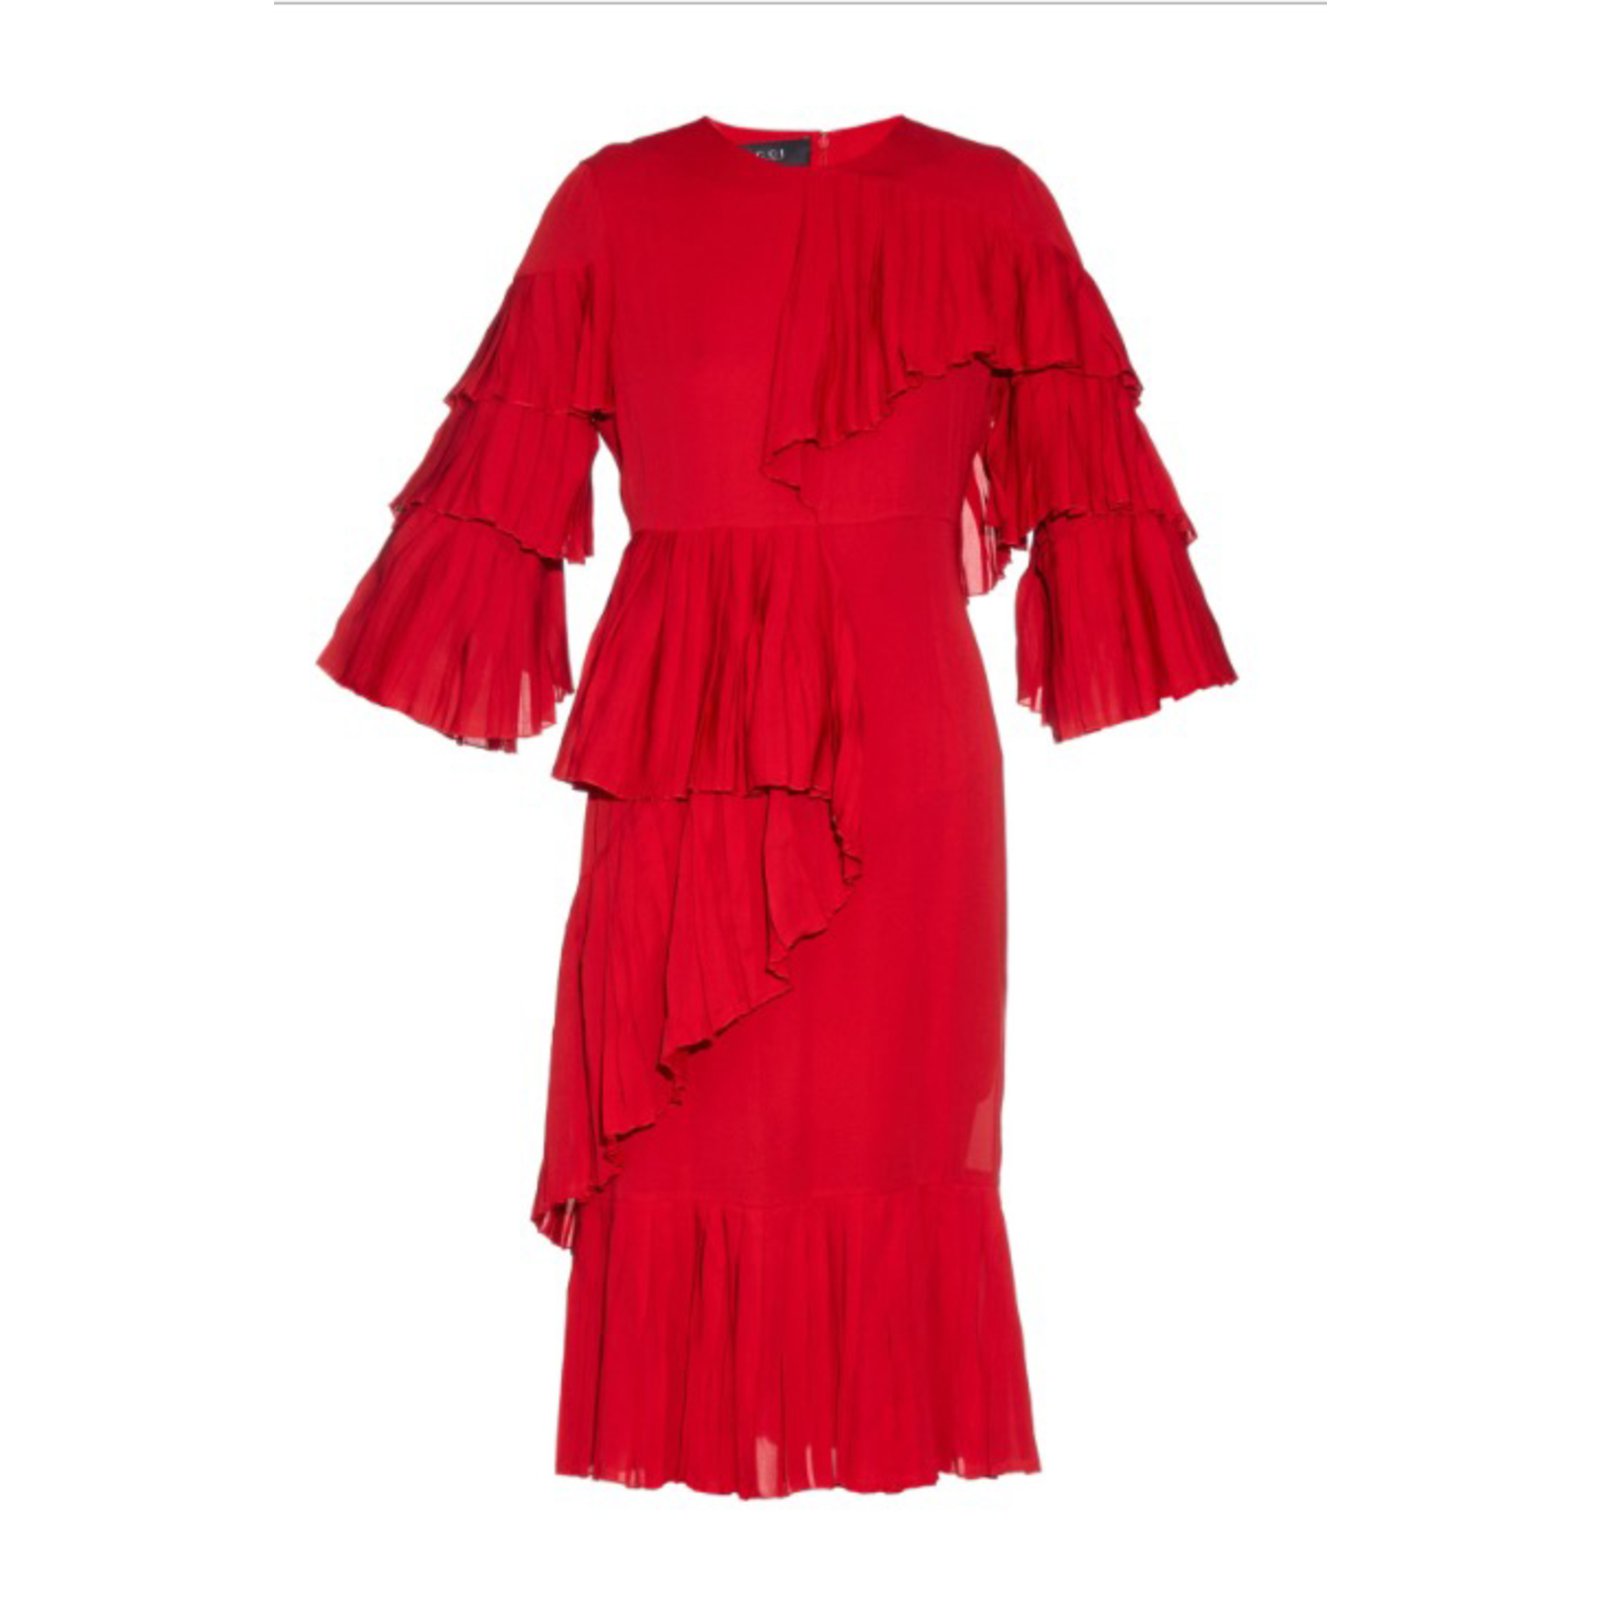 gucci dress red